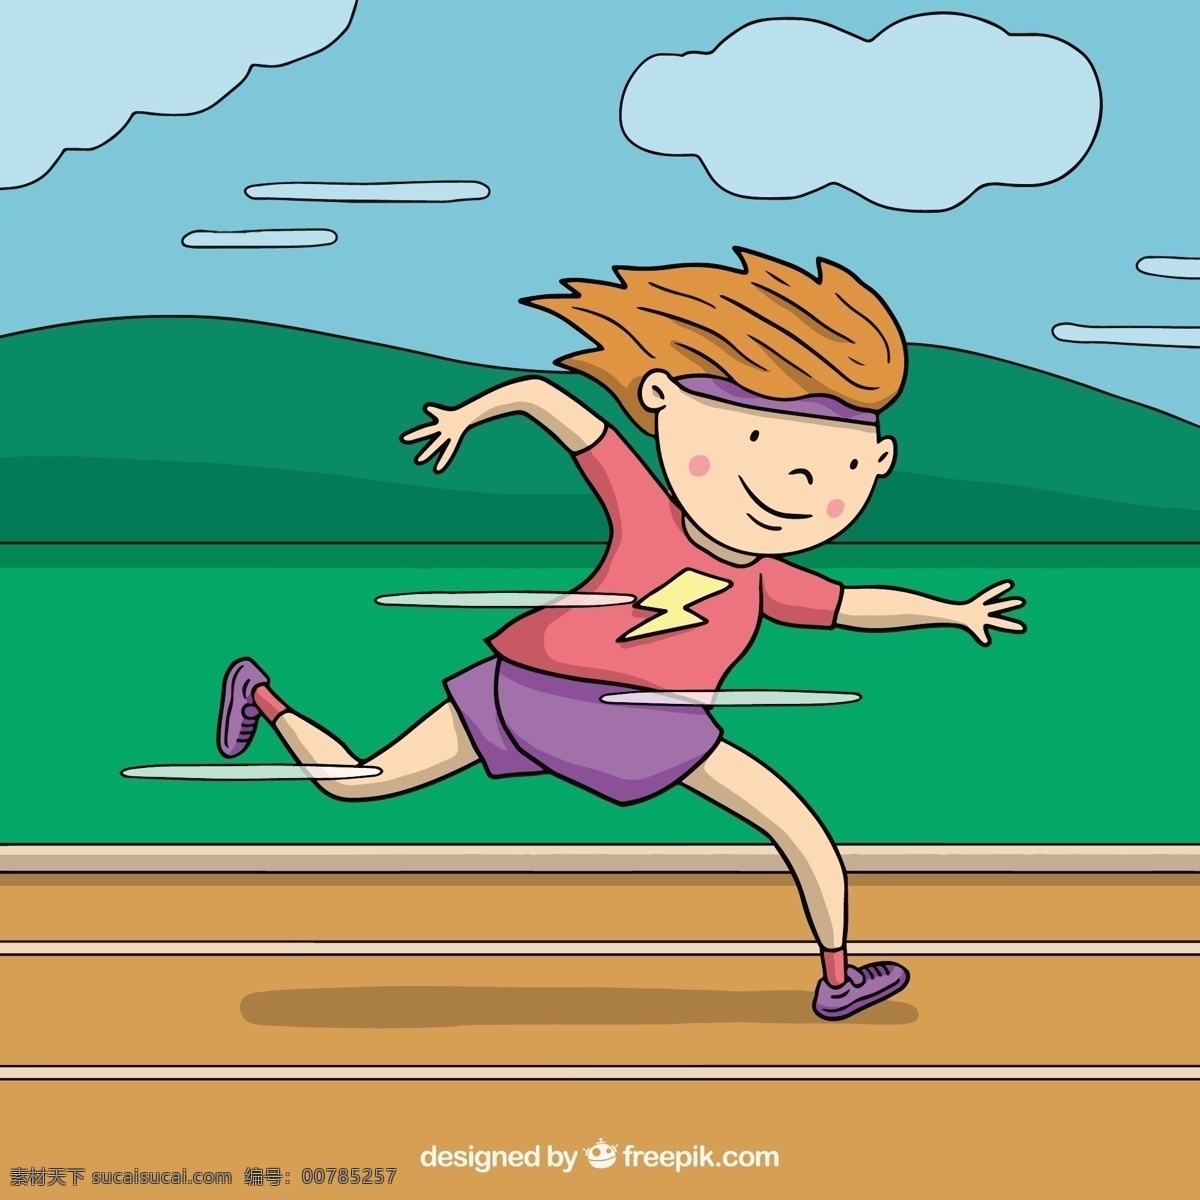 男孩 奔跑 背景 运动 健身 健康 墙纸 健身房 跑步 训练 锻炼 生活方式 赛道